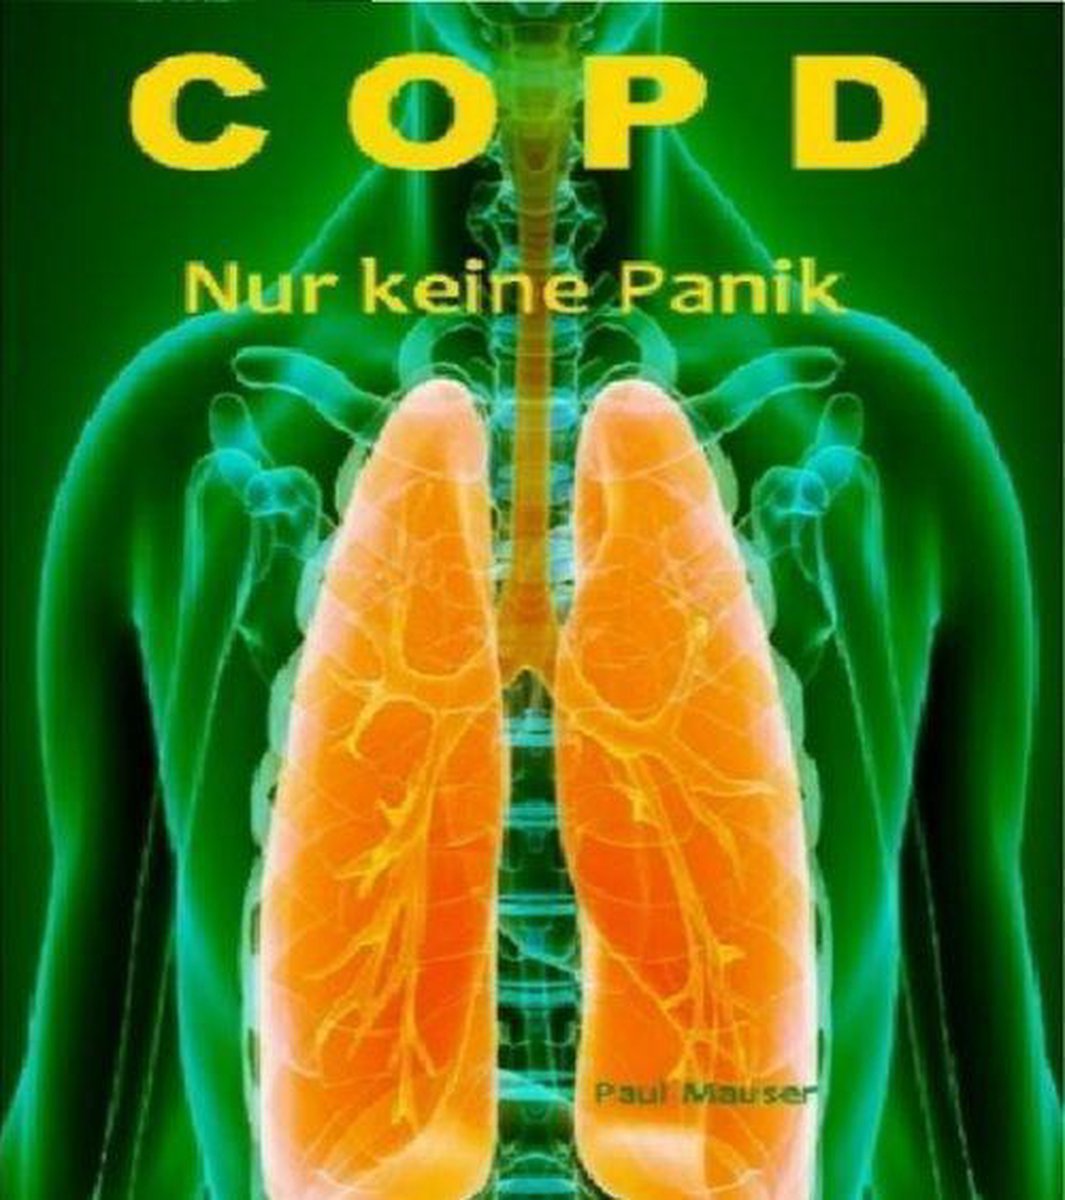 COPD Nicht verzweifeln - Paul Mauser